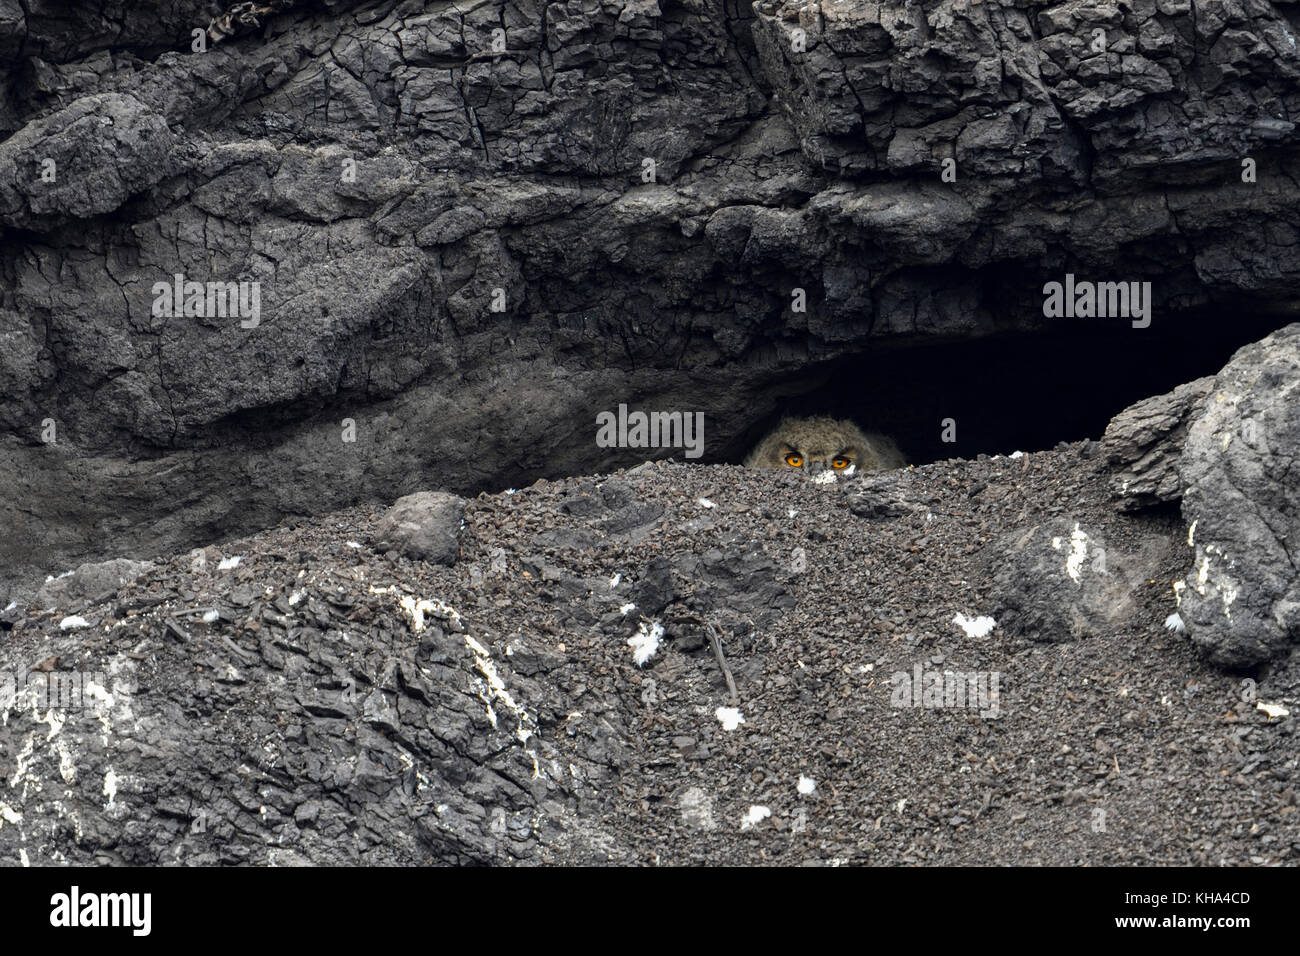 Eurasischer Eulenadler / Europäischer Uhu ( Bubo bubo ), junges Küken, versteckt in seinem Nistloch, Höhle, unter Braunkohle, Braunkohle in einem Tagebau, w Stockfoto